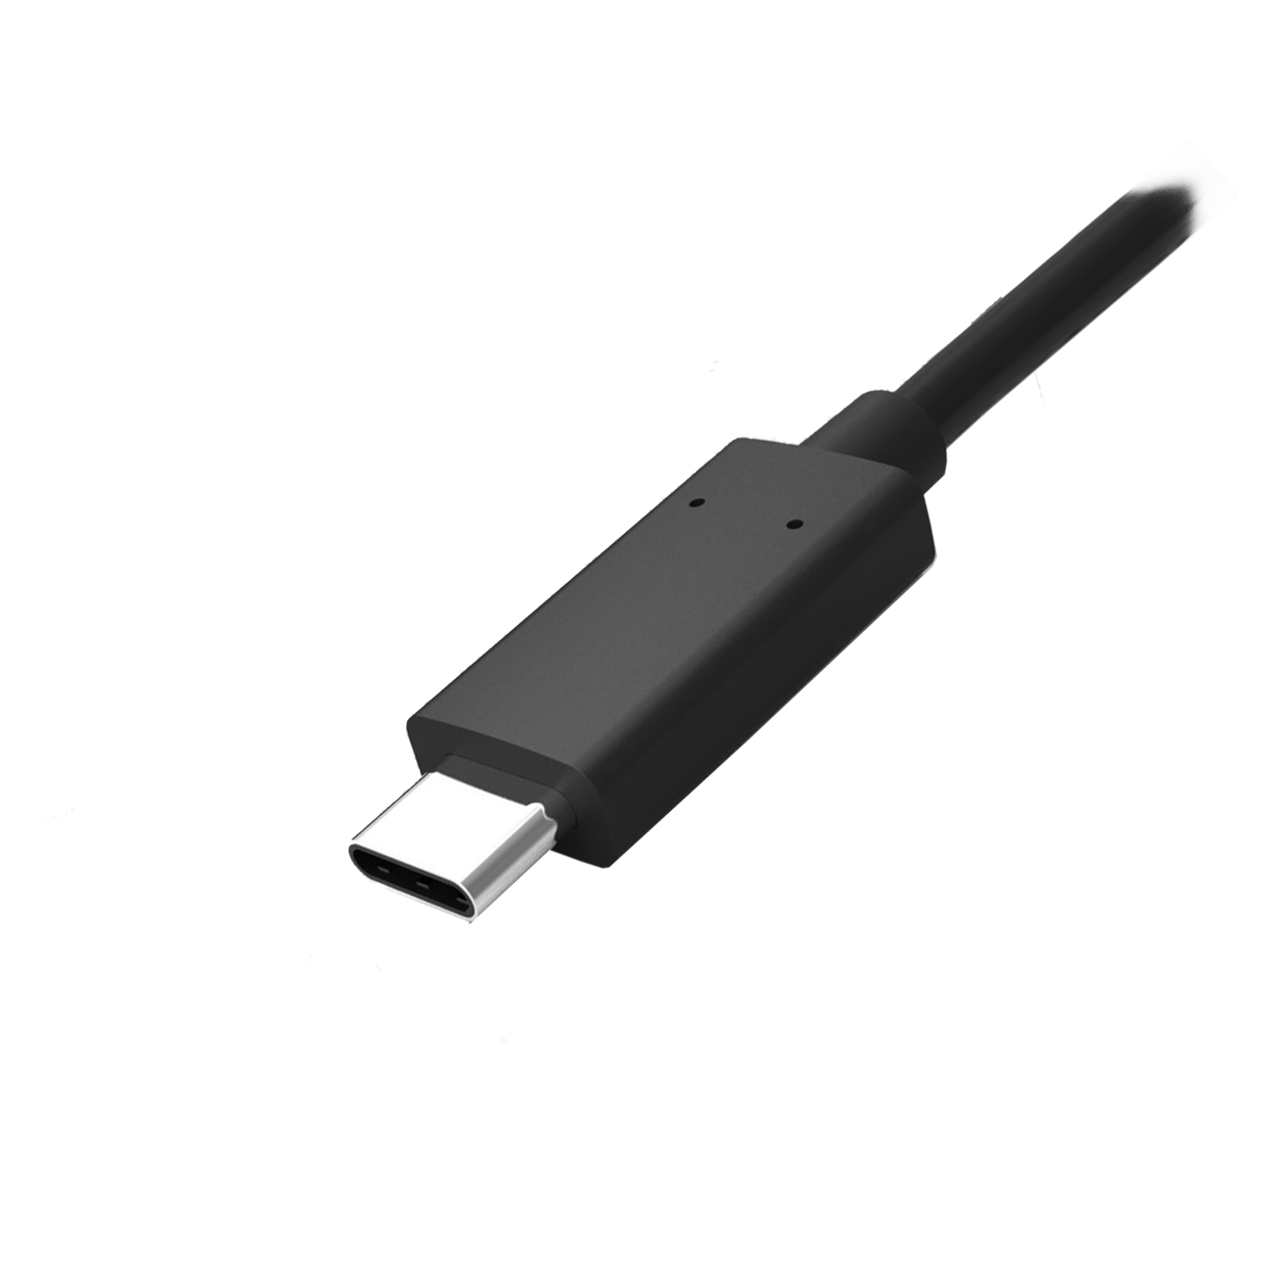 Bild für Kategorie USB Type C